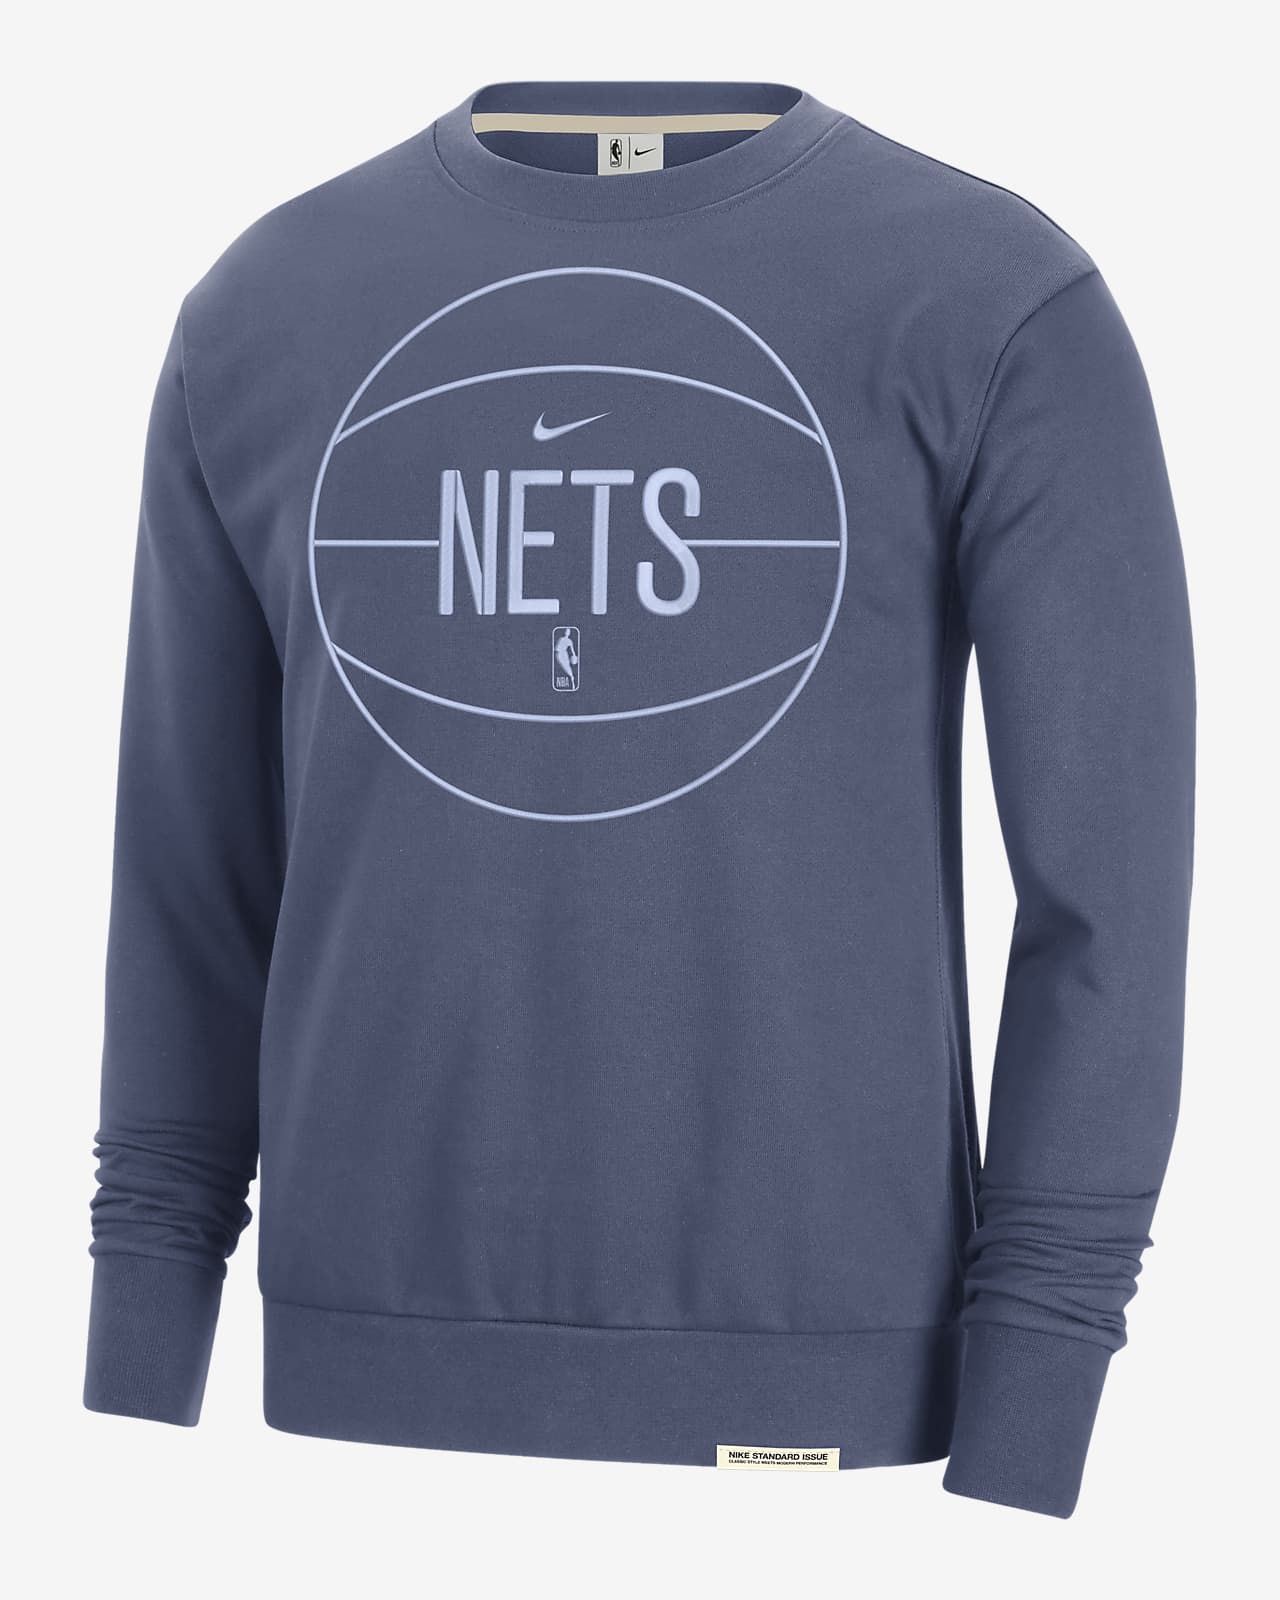 Brooklyn Nets Standard Issue Men's Nike Dri-FIT NBA Sweatshirt